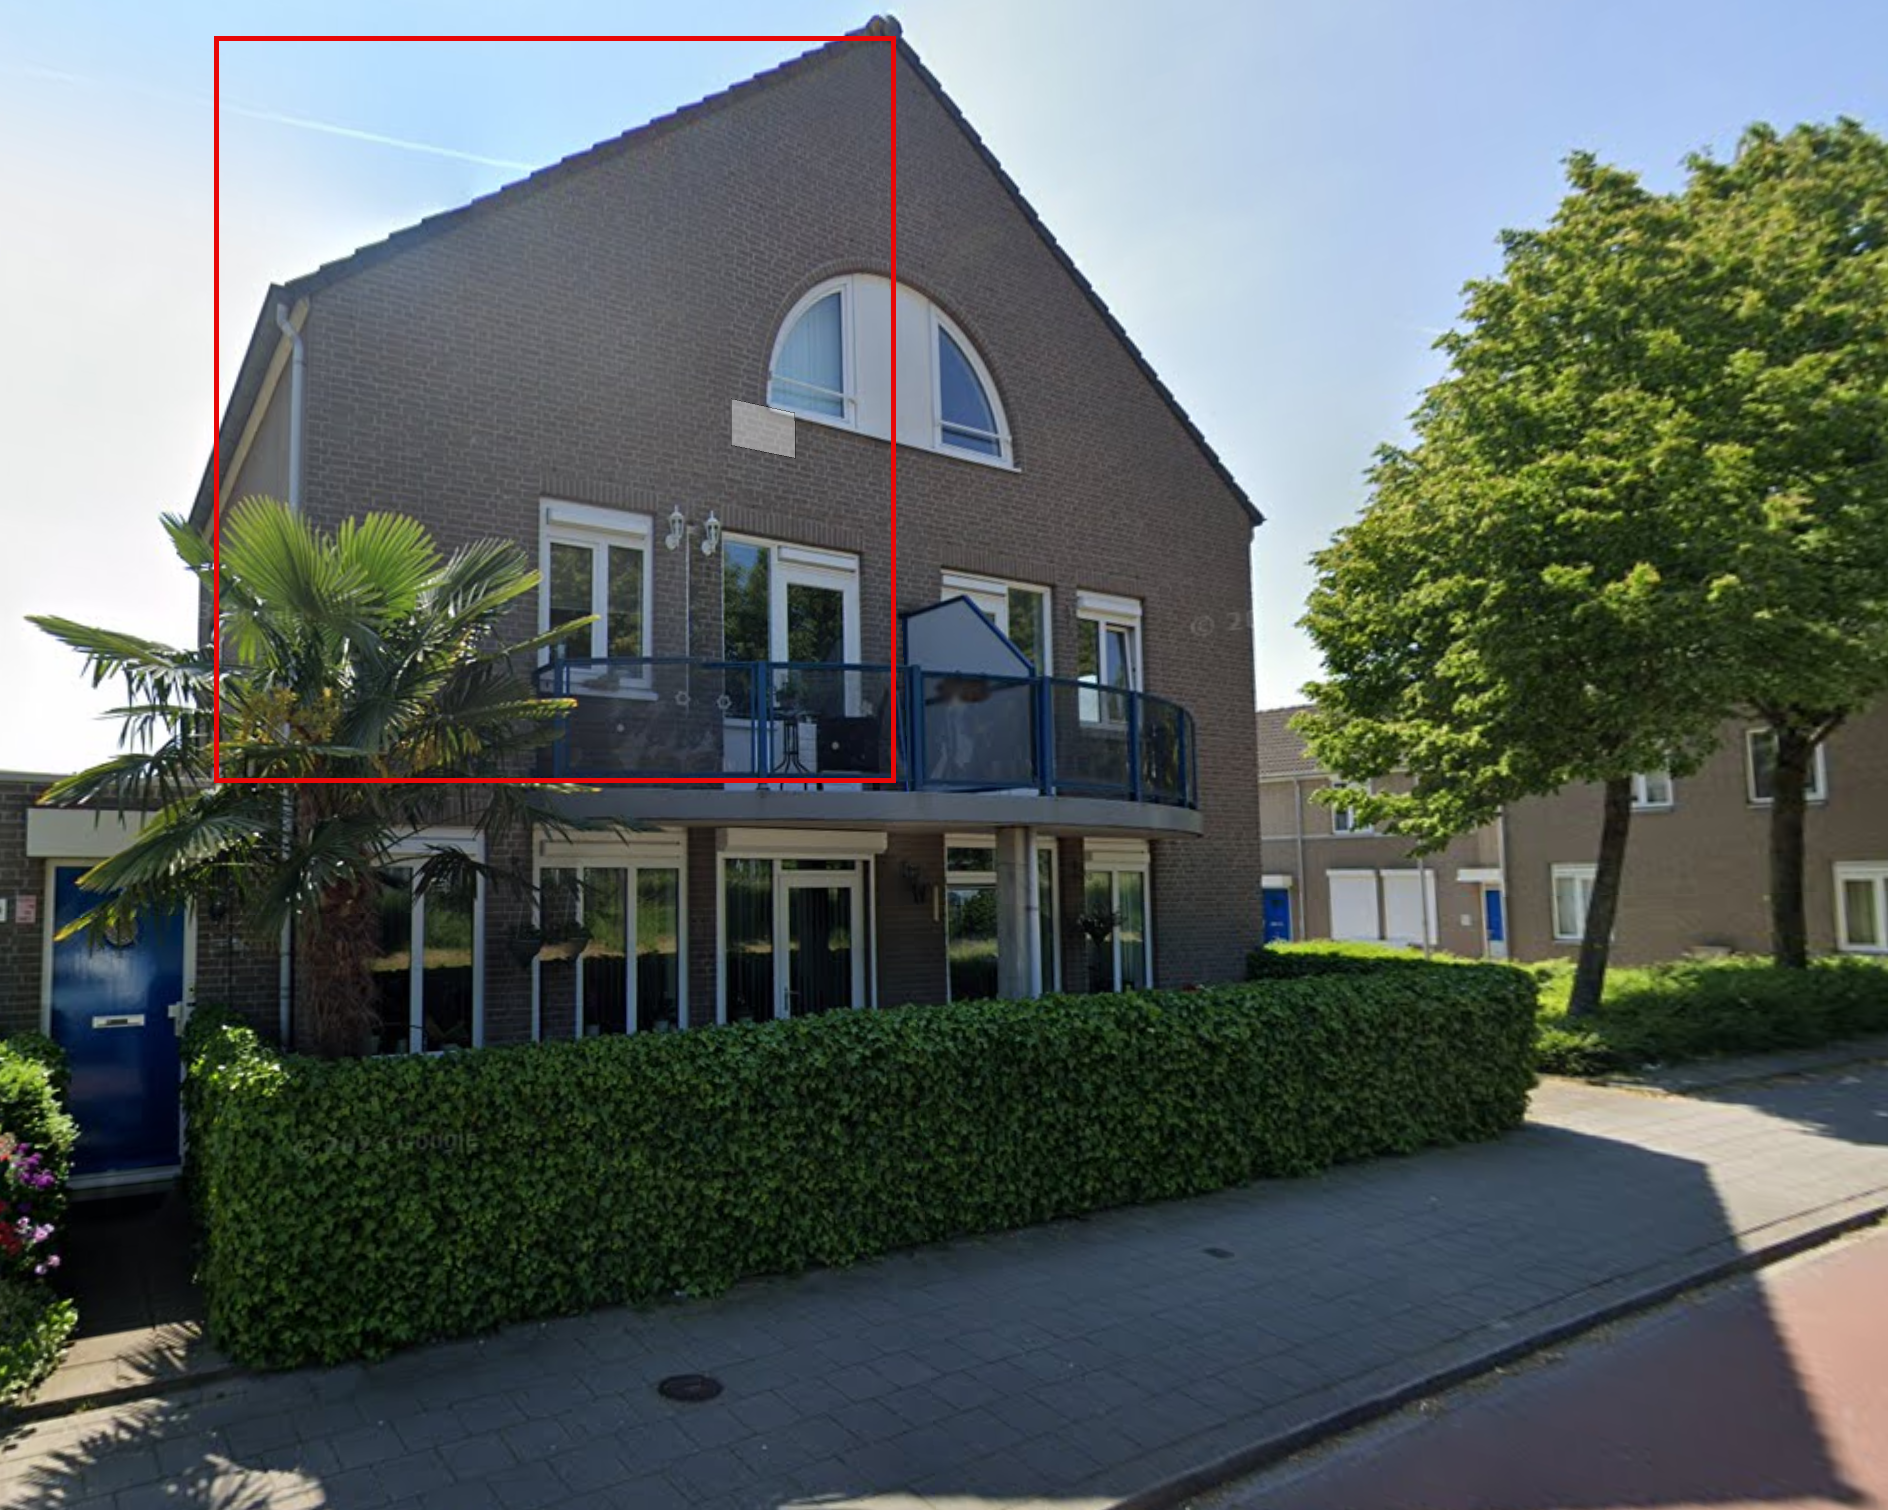 Laanderstraat 64, 6411 VE Heerlen, Nederland